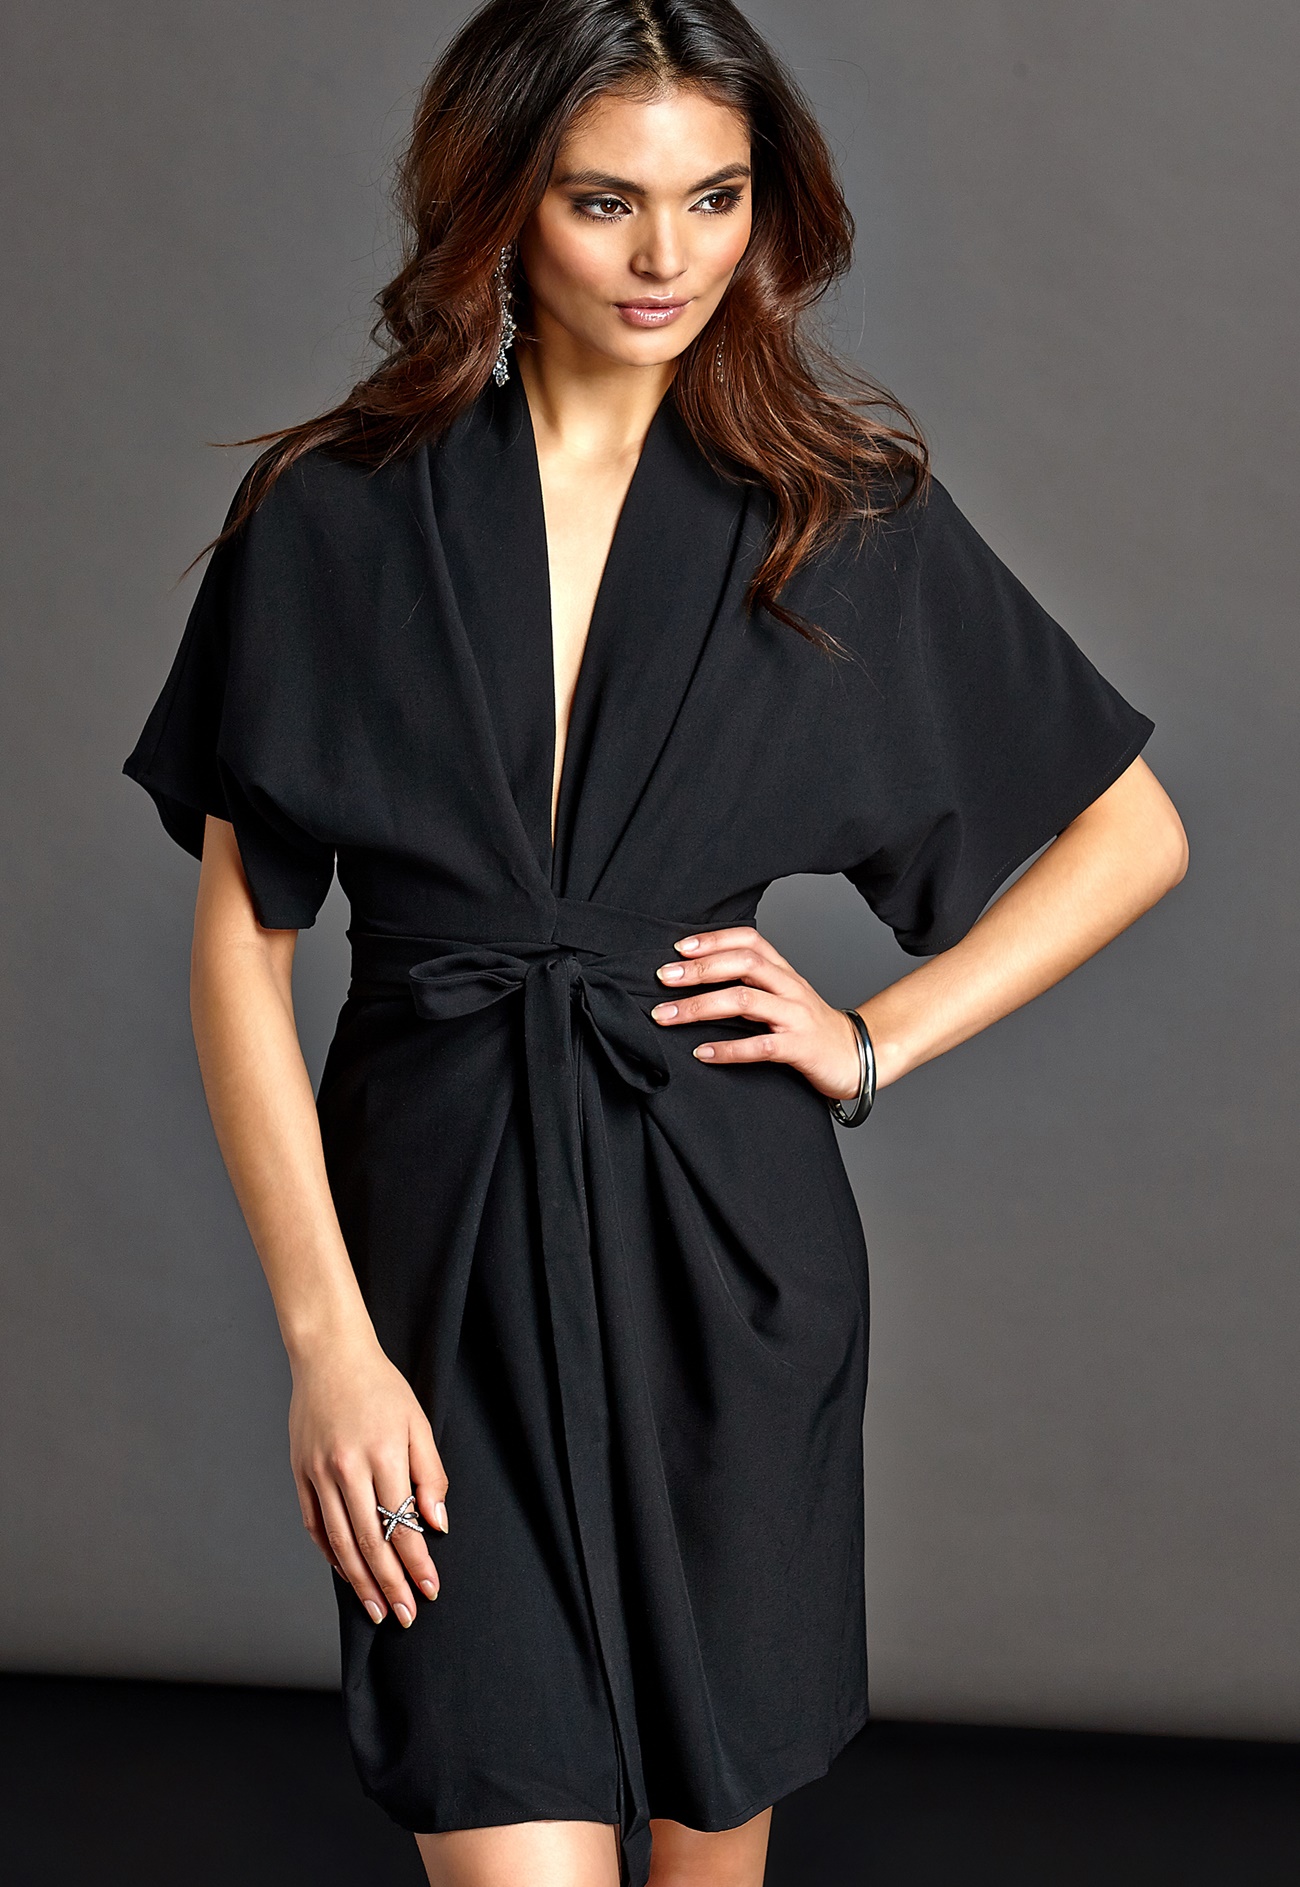 Black Dress And Kimono Photo Album - Get Your Fashion Style